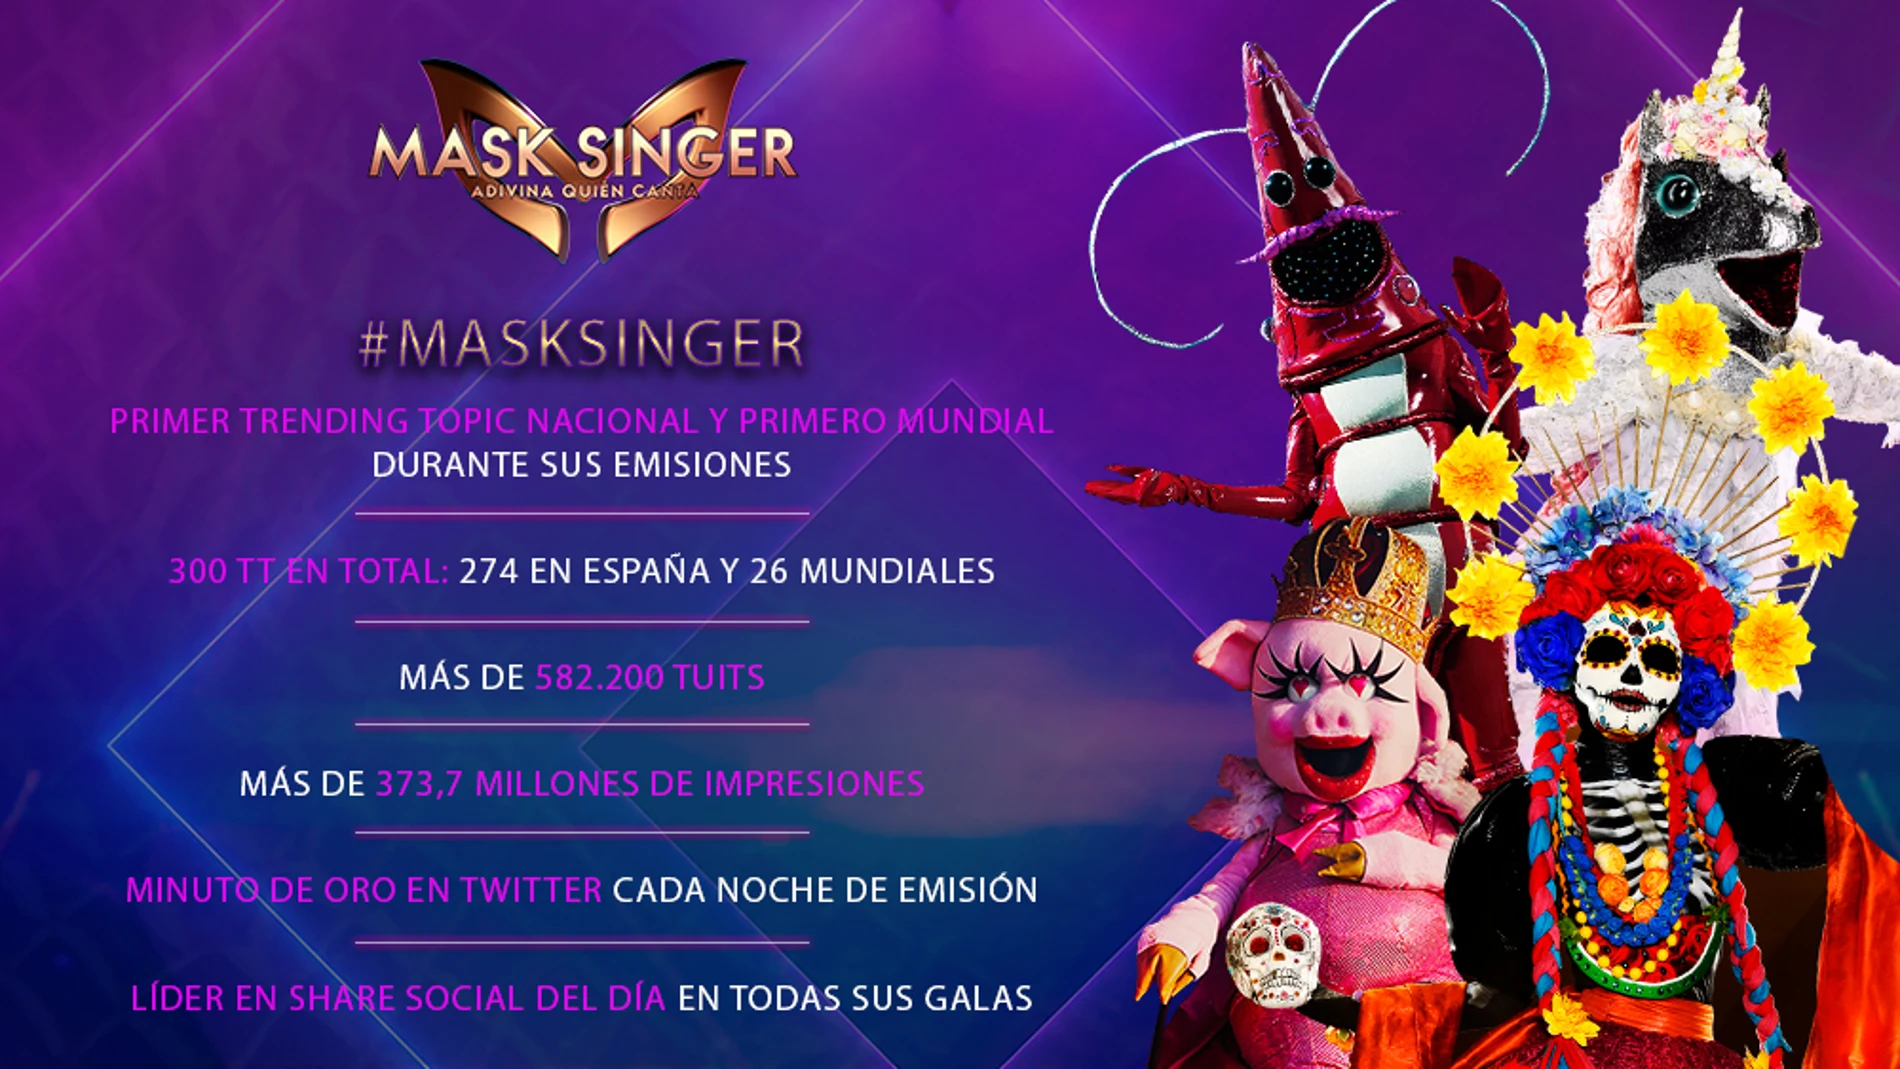 'Mask singer' se confirma como un fenómeno en su primera temporada: arrasa en las redes sociales en España y a nivel mundial